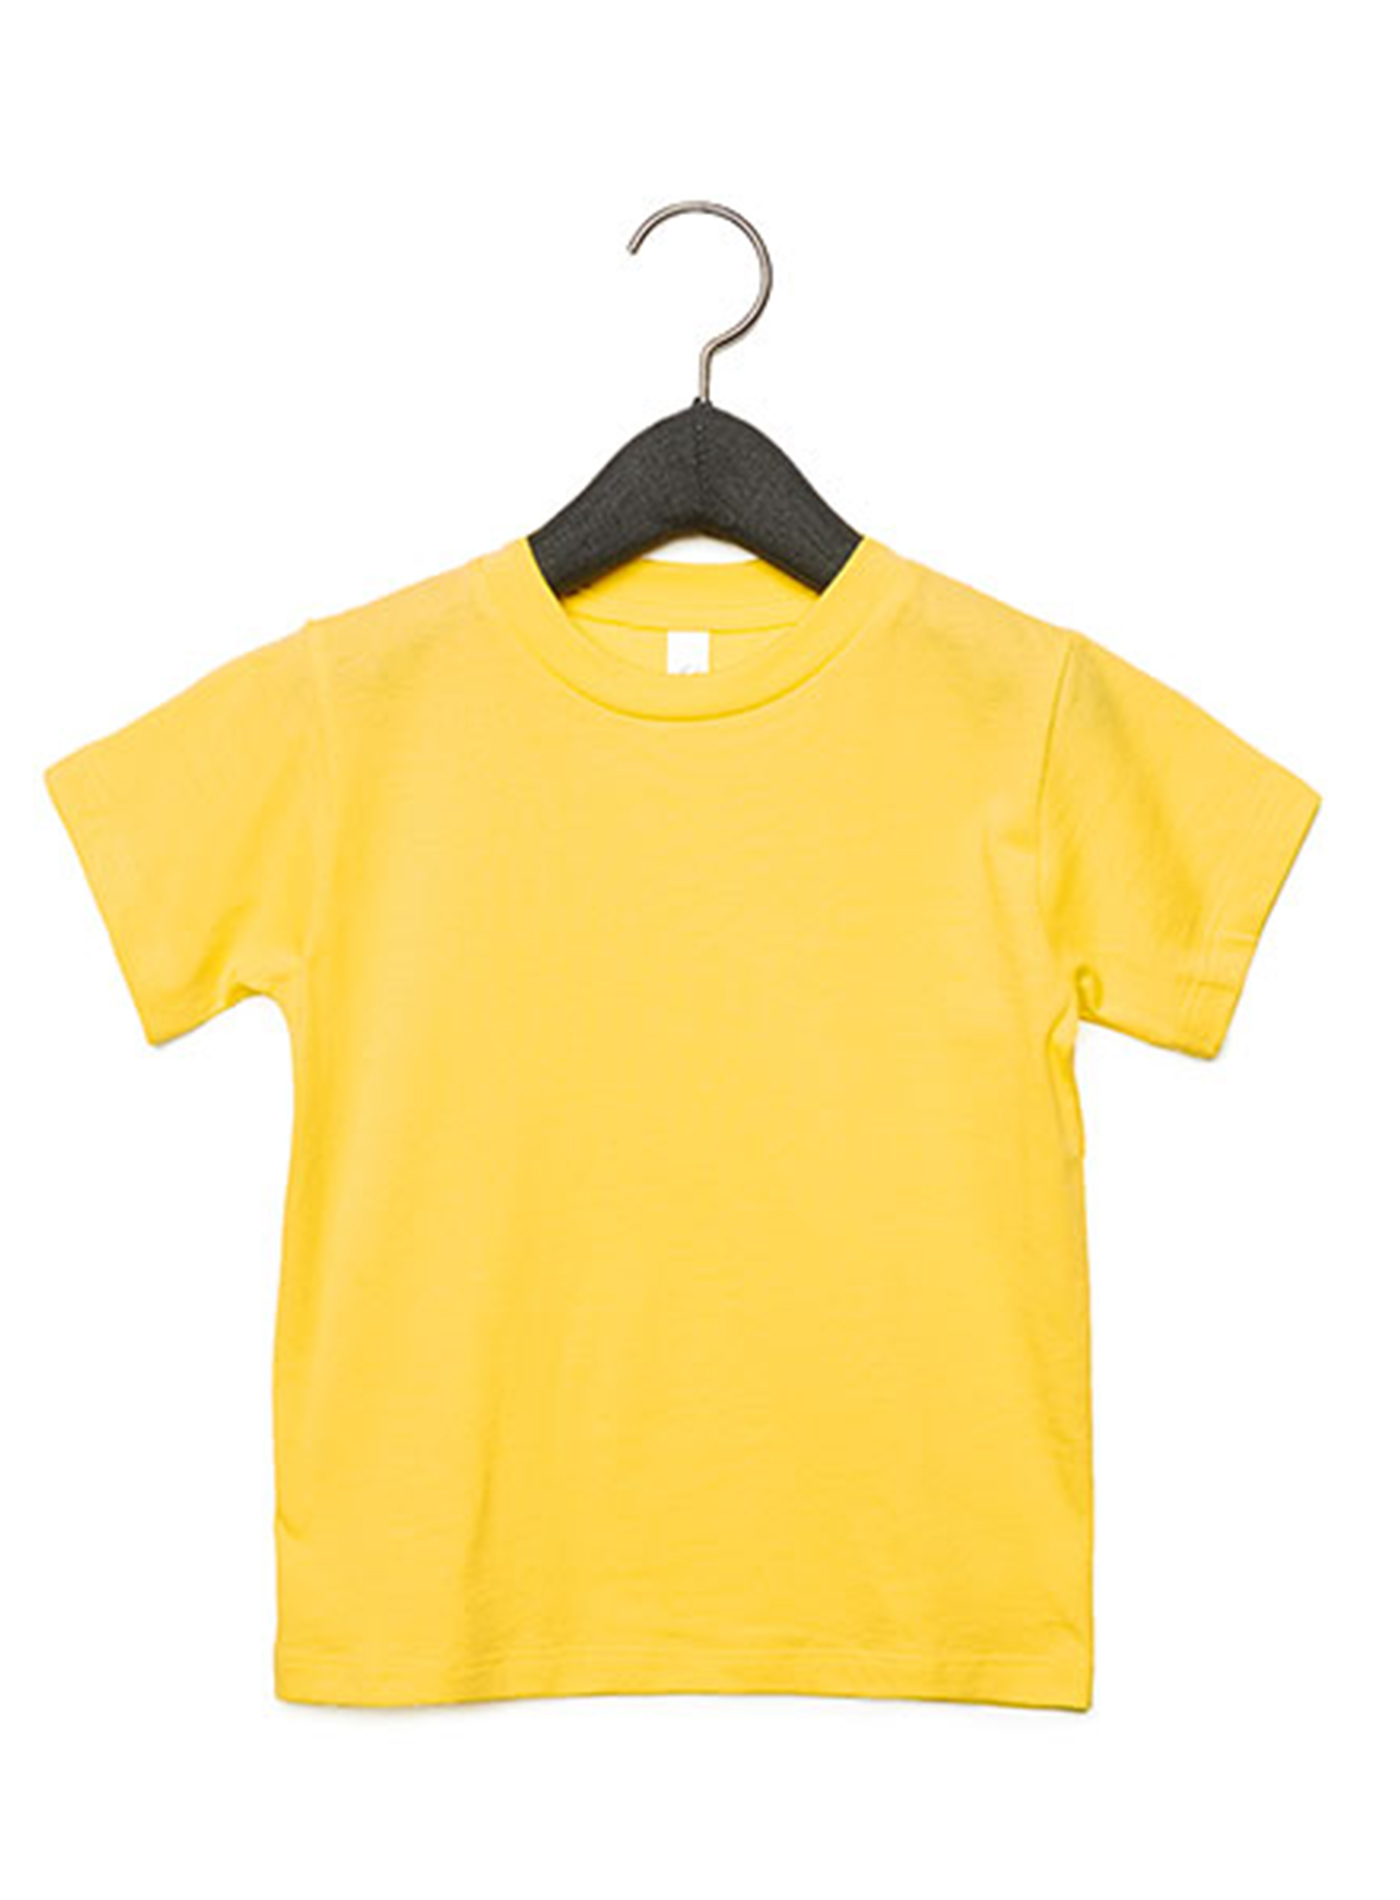 Dětské tričko Jersey - Žlutá 3T (98)